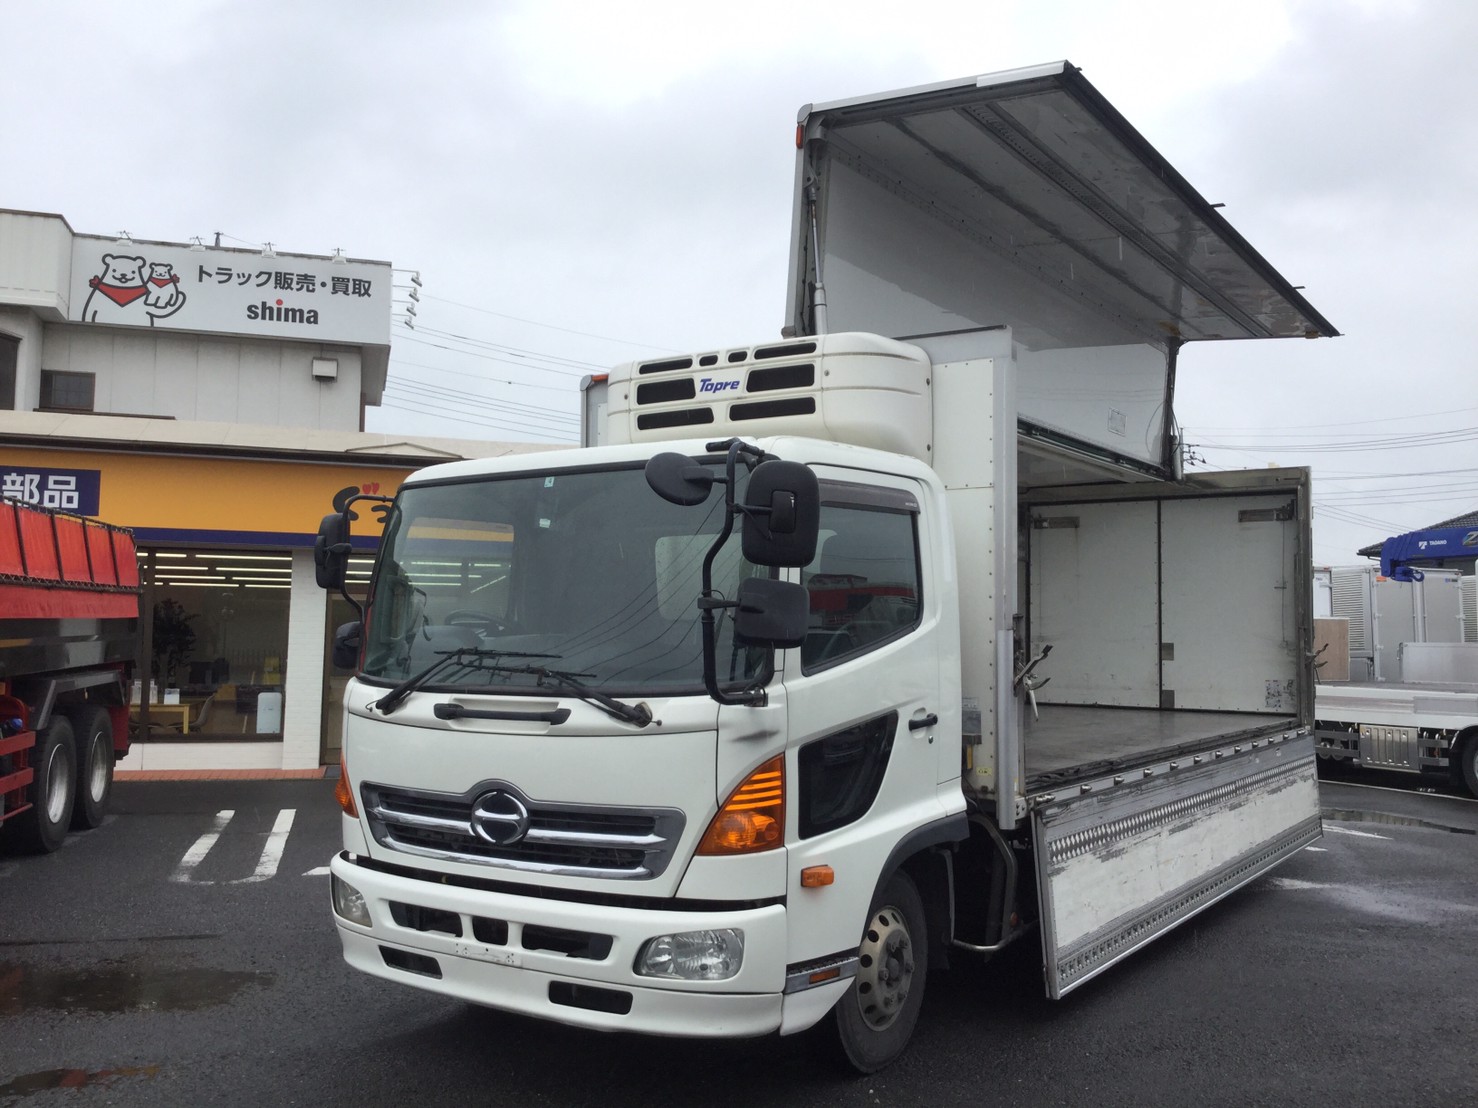 日野レンジャー 平成24年式 Skg Fc7jkaa 冷蔵冷凍 8073 中古トラック販売 シマ商会のグットラックshima